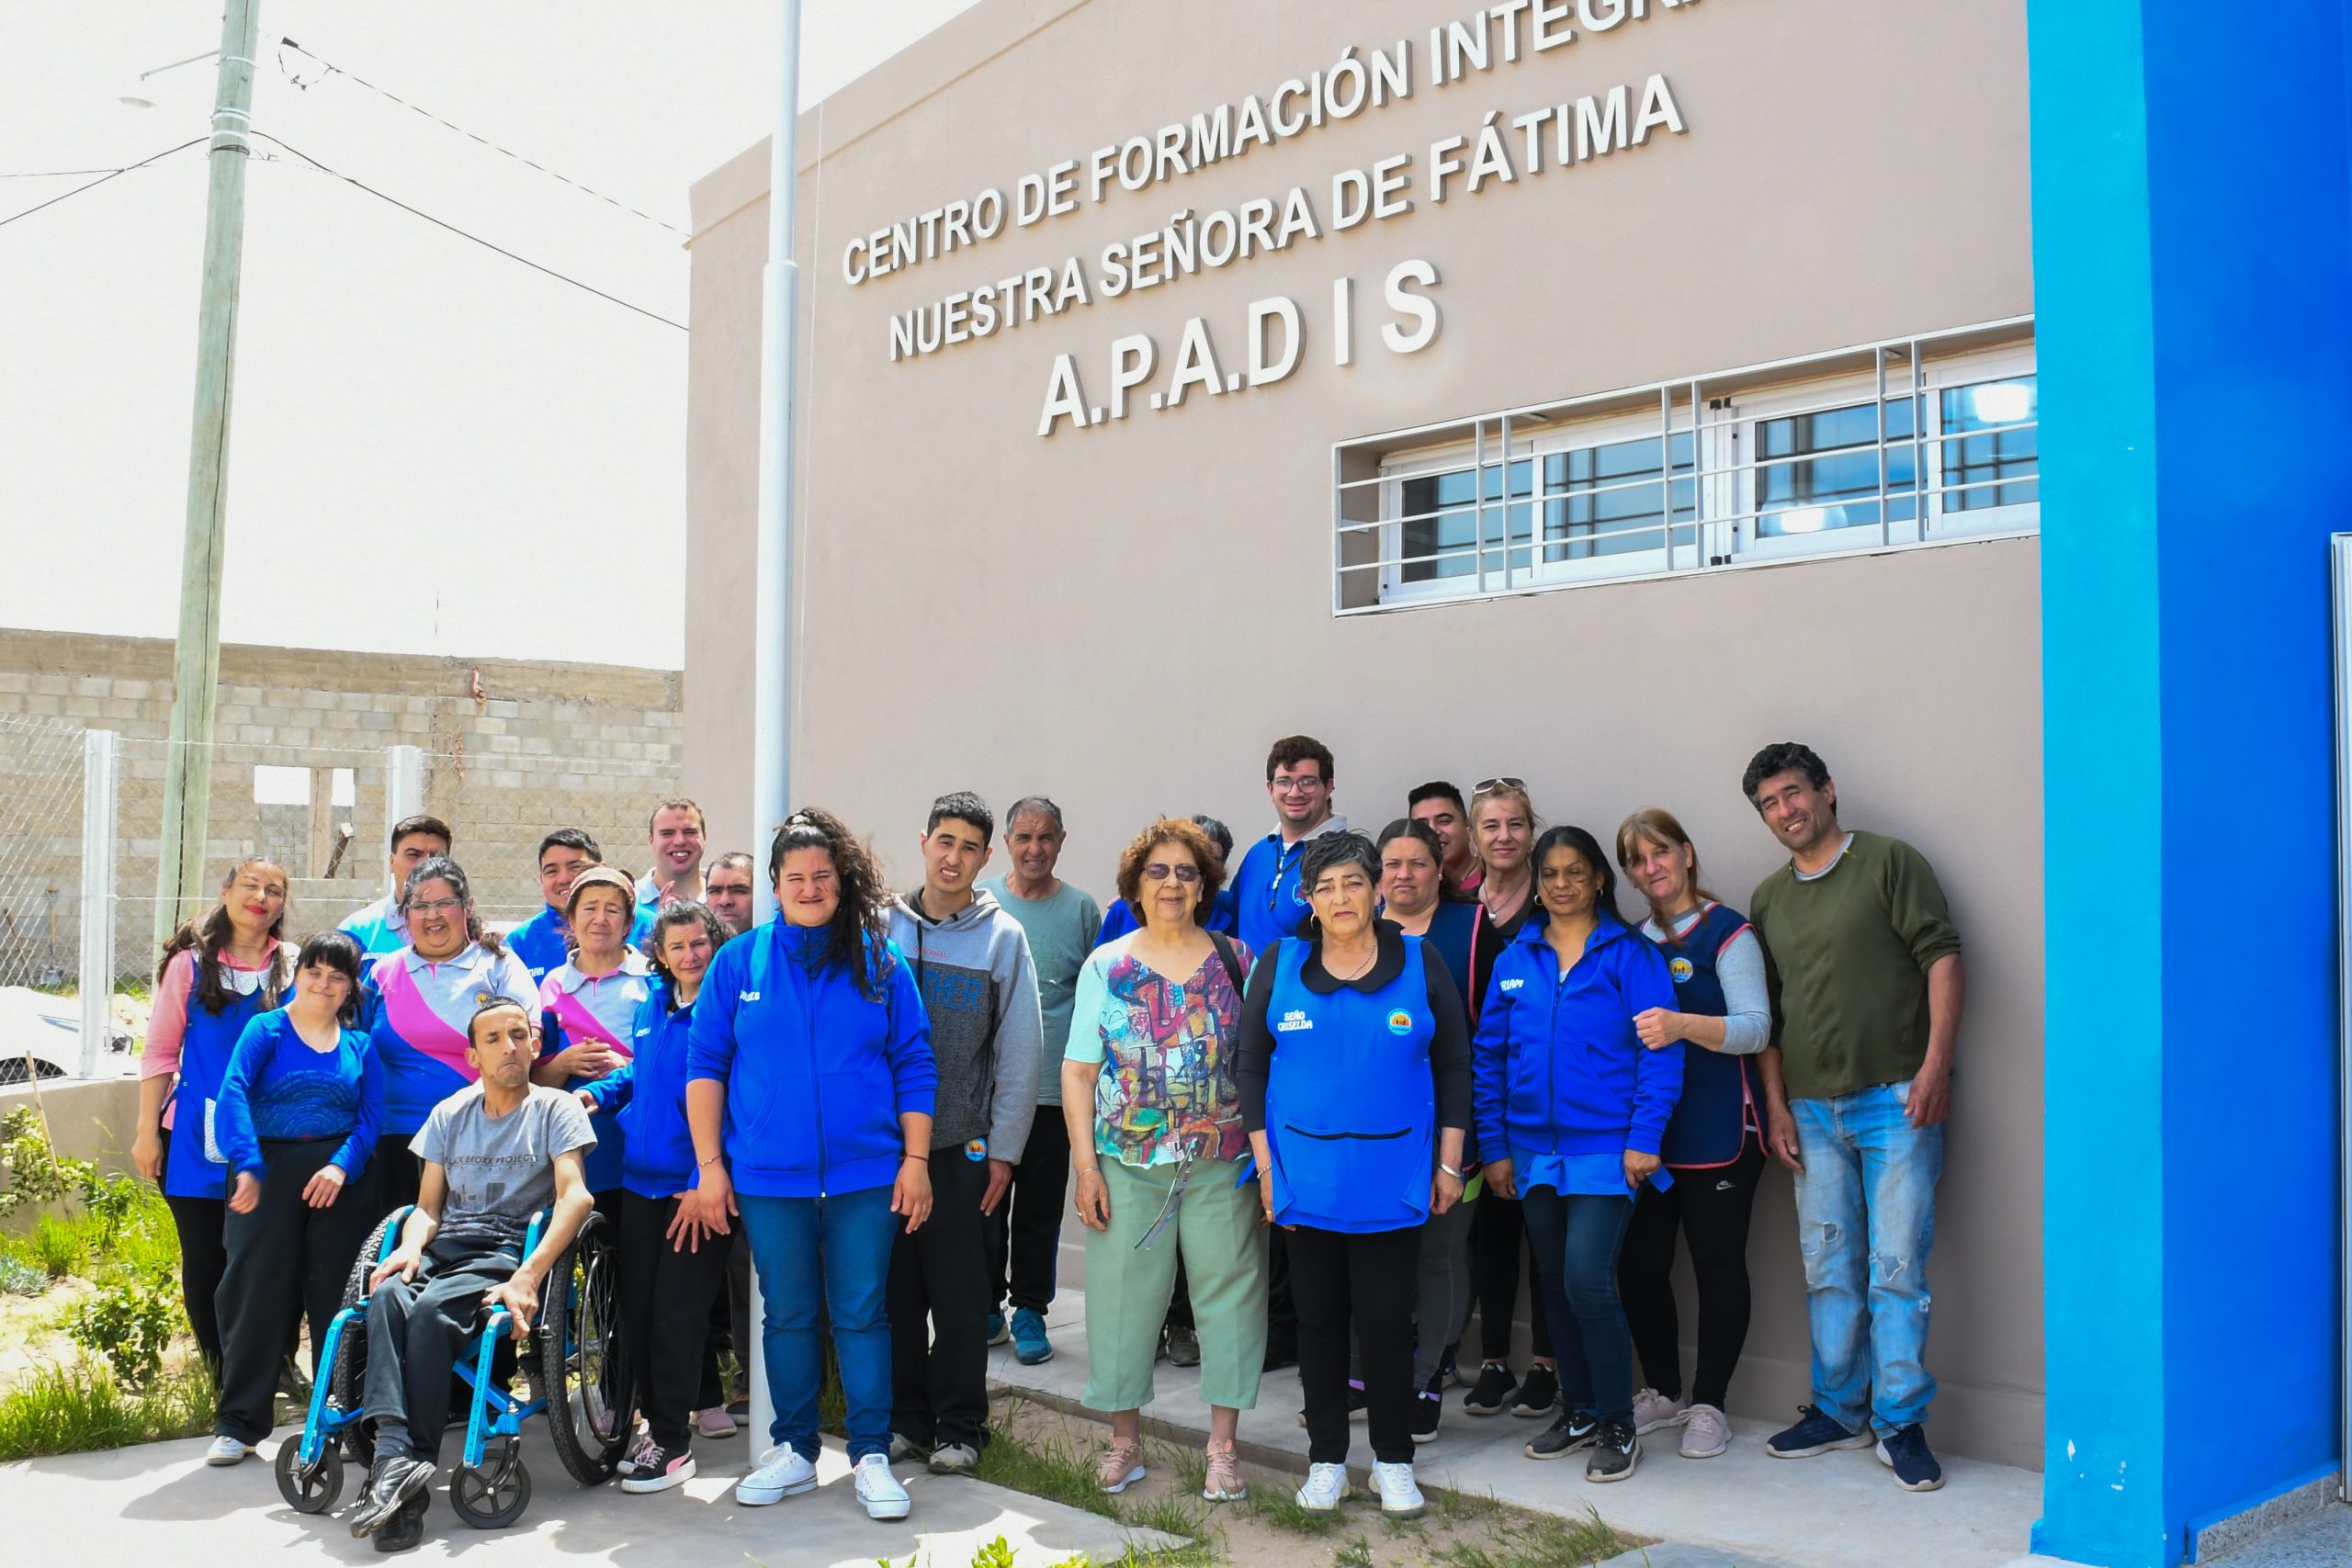 Centro de Formación Integral “Nuestra Señora de Fátima”: un nuevo espacio de inclusión e igualdad de oportunidades